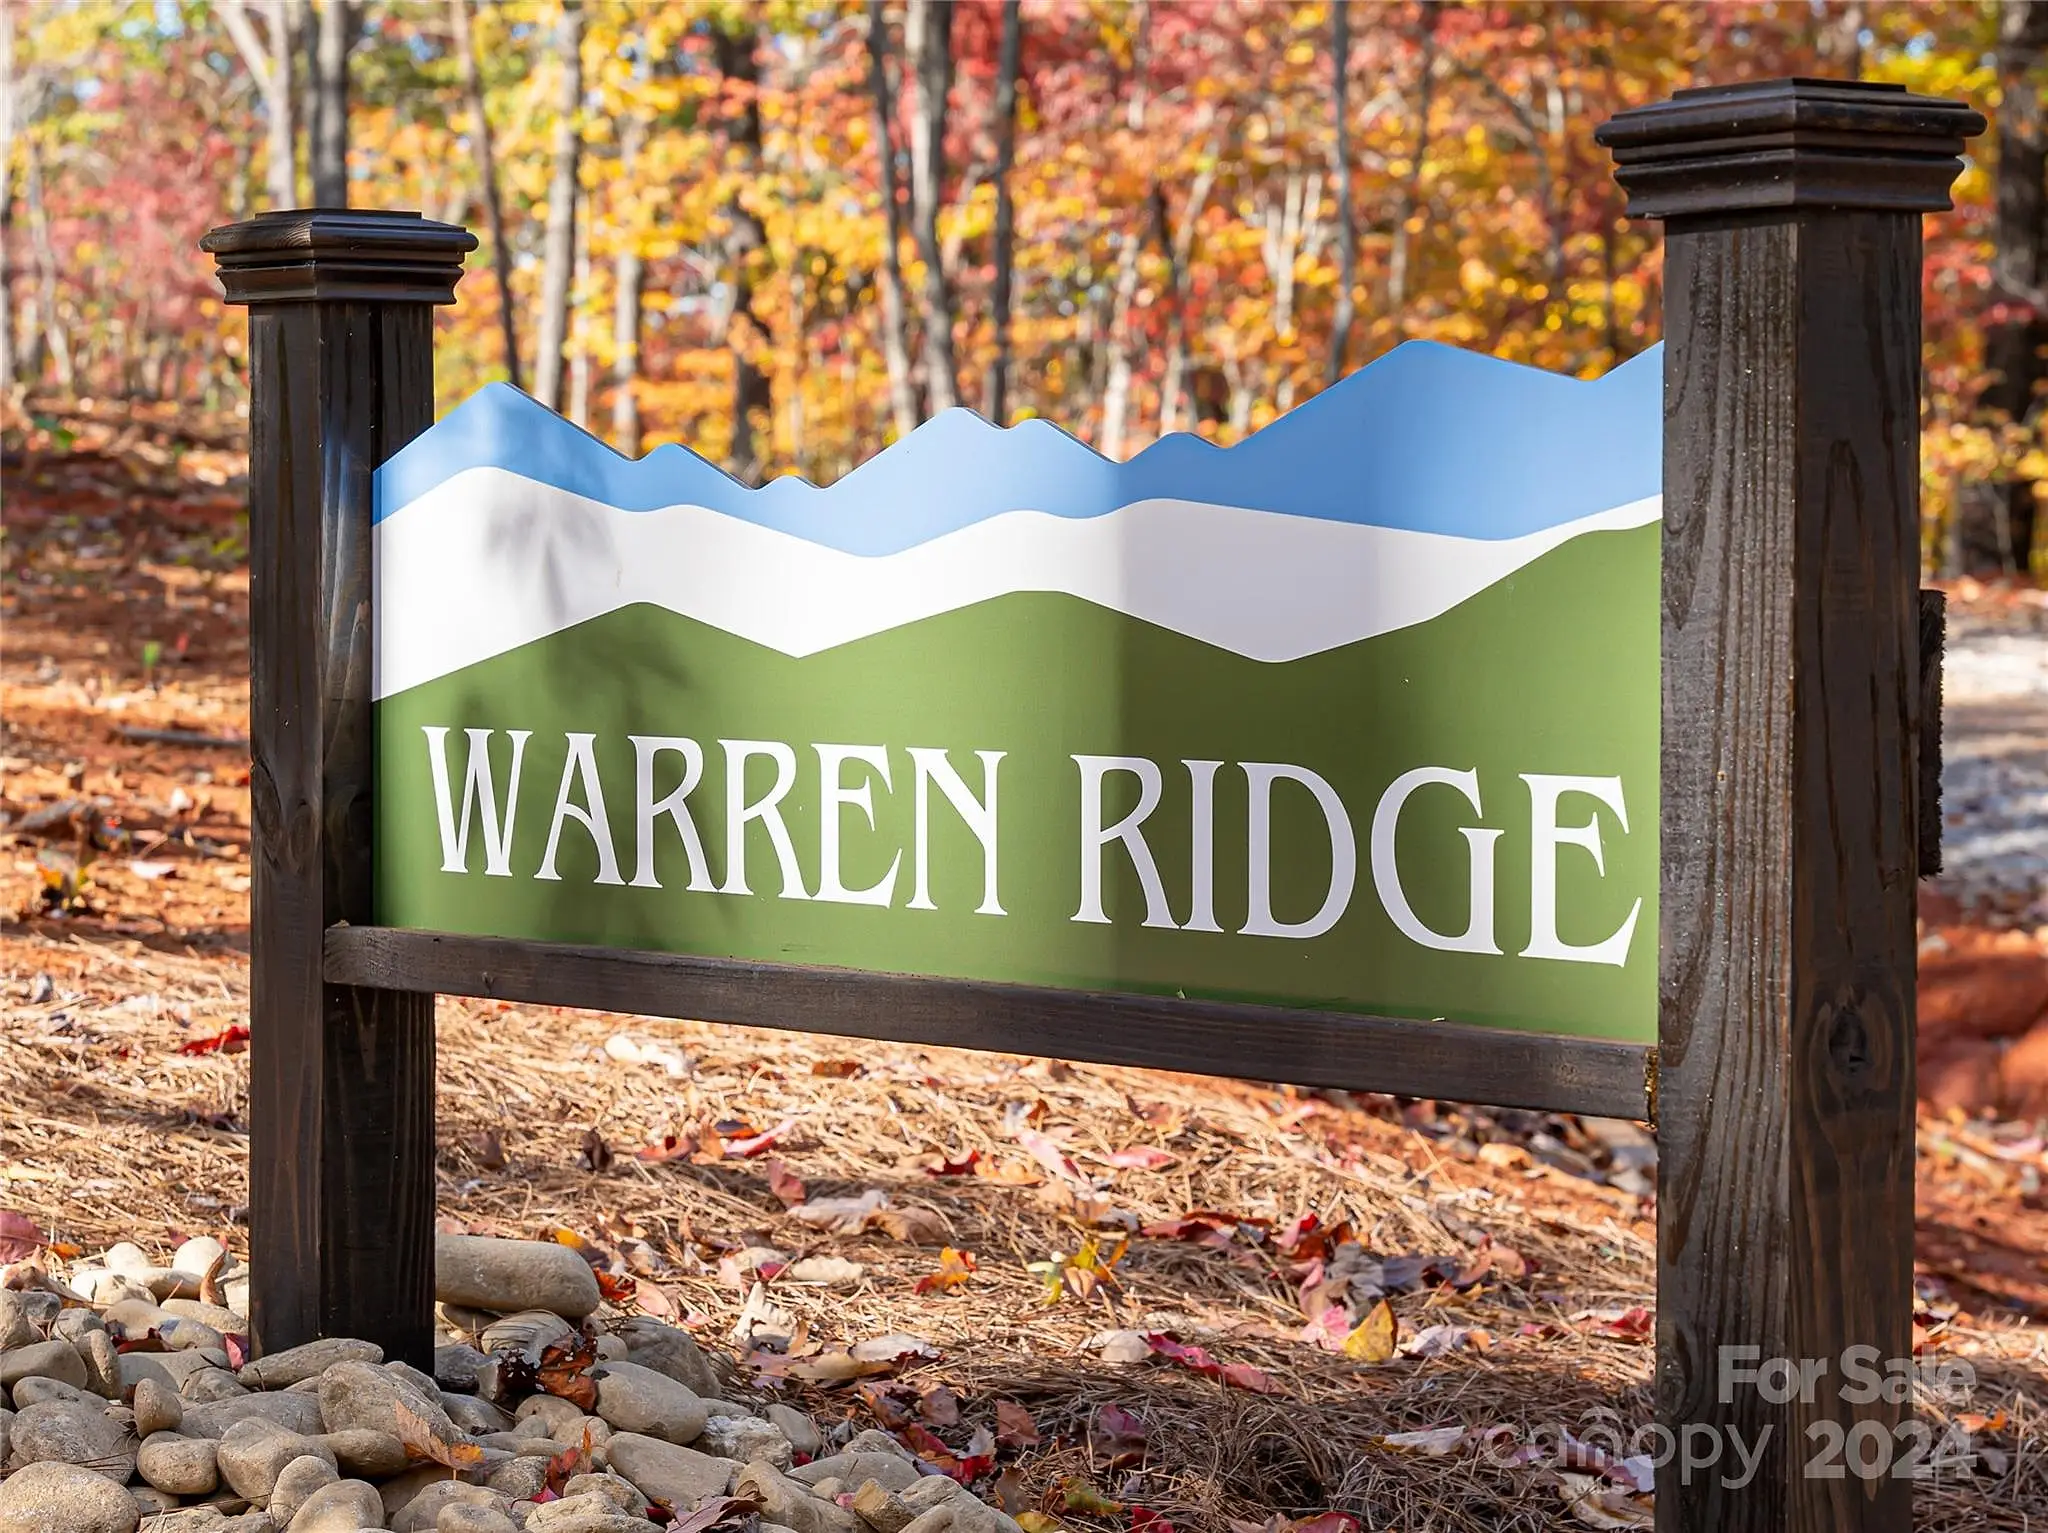 200 Warren Ridge Way